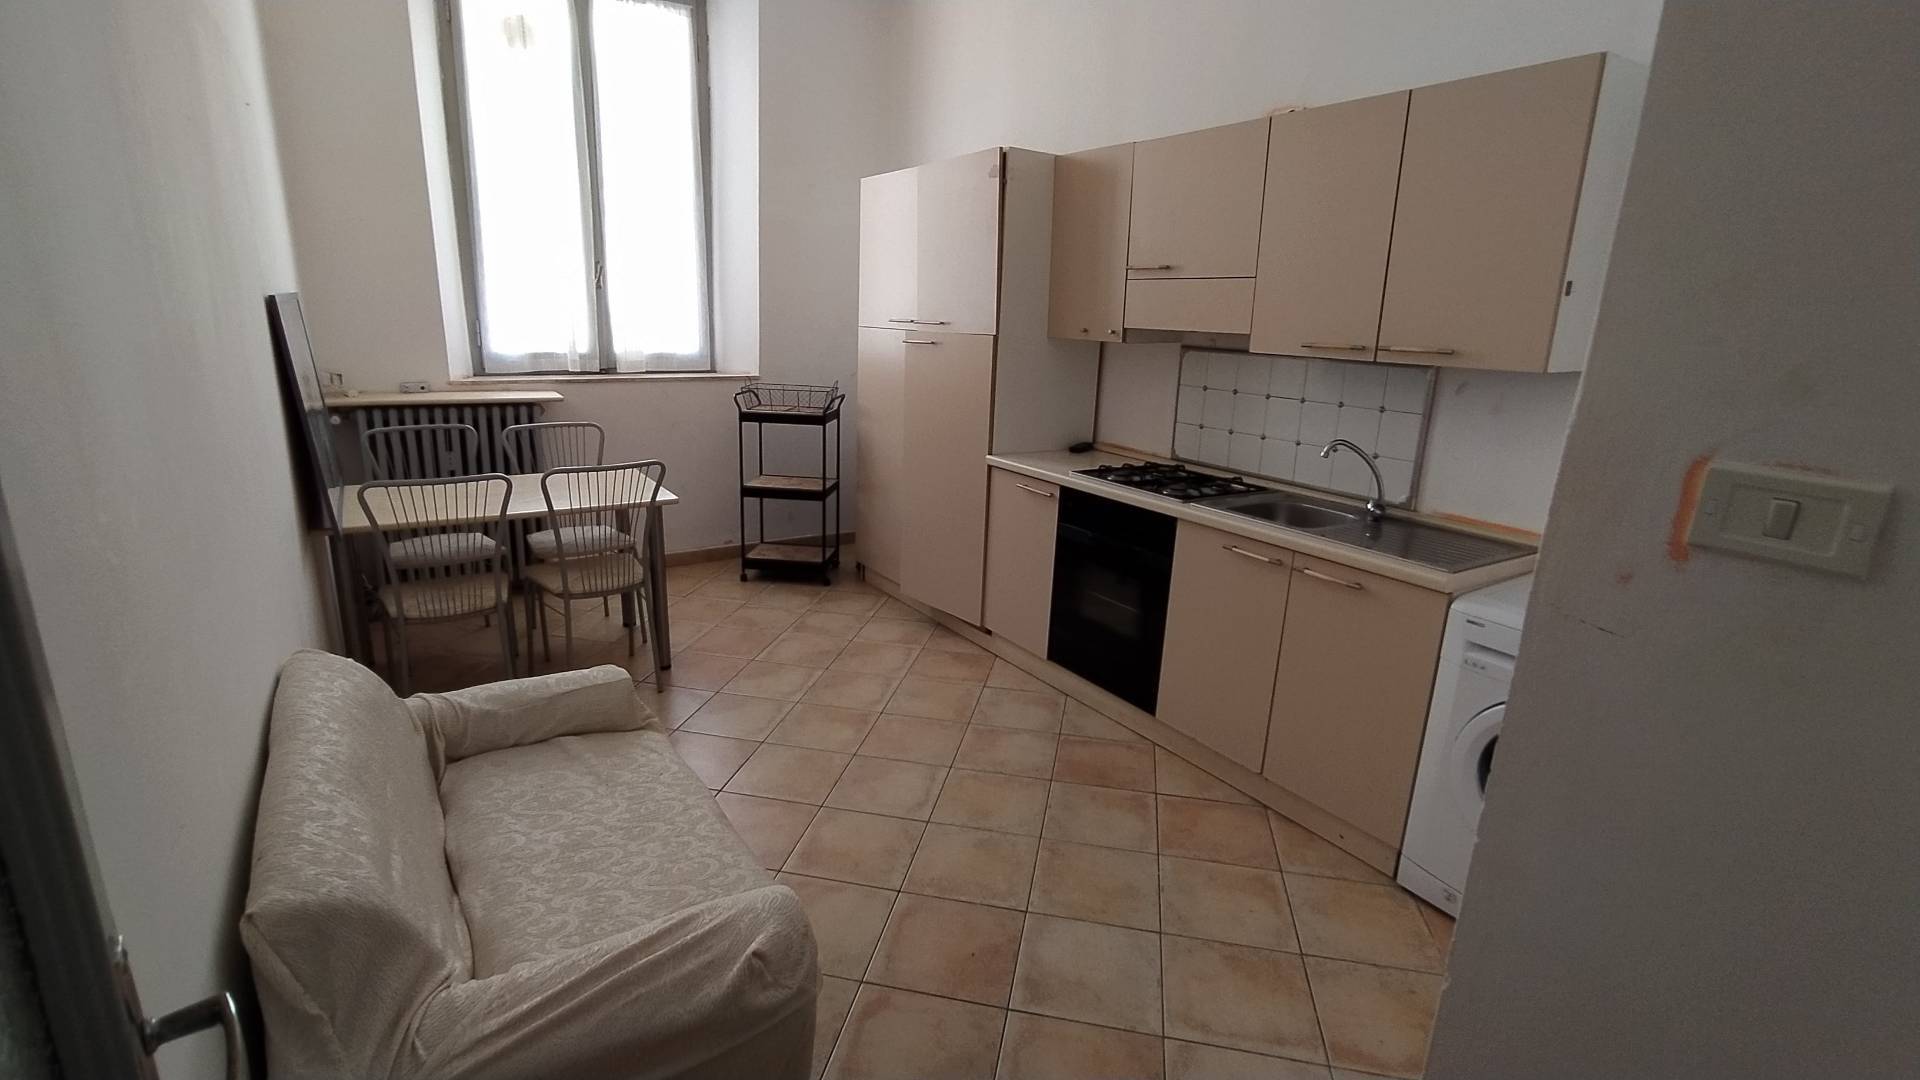 Appartamento in affitto a Casale Monferrato, 2 locali, prezzo € 350 | PortaleAgenzieImmobiliari.it